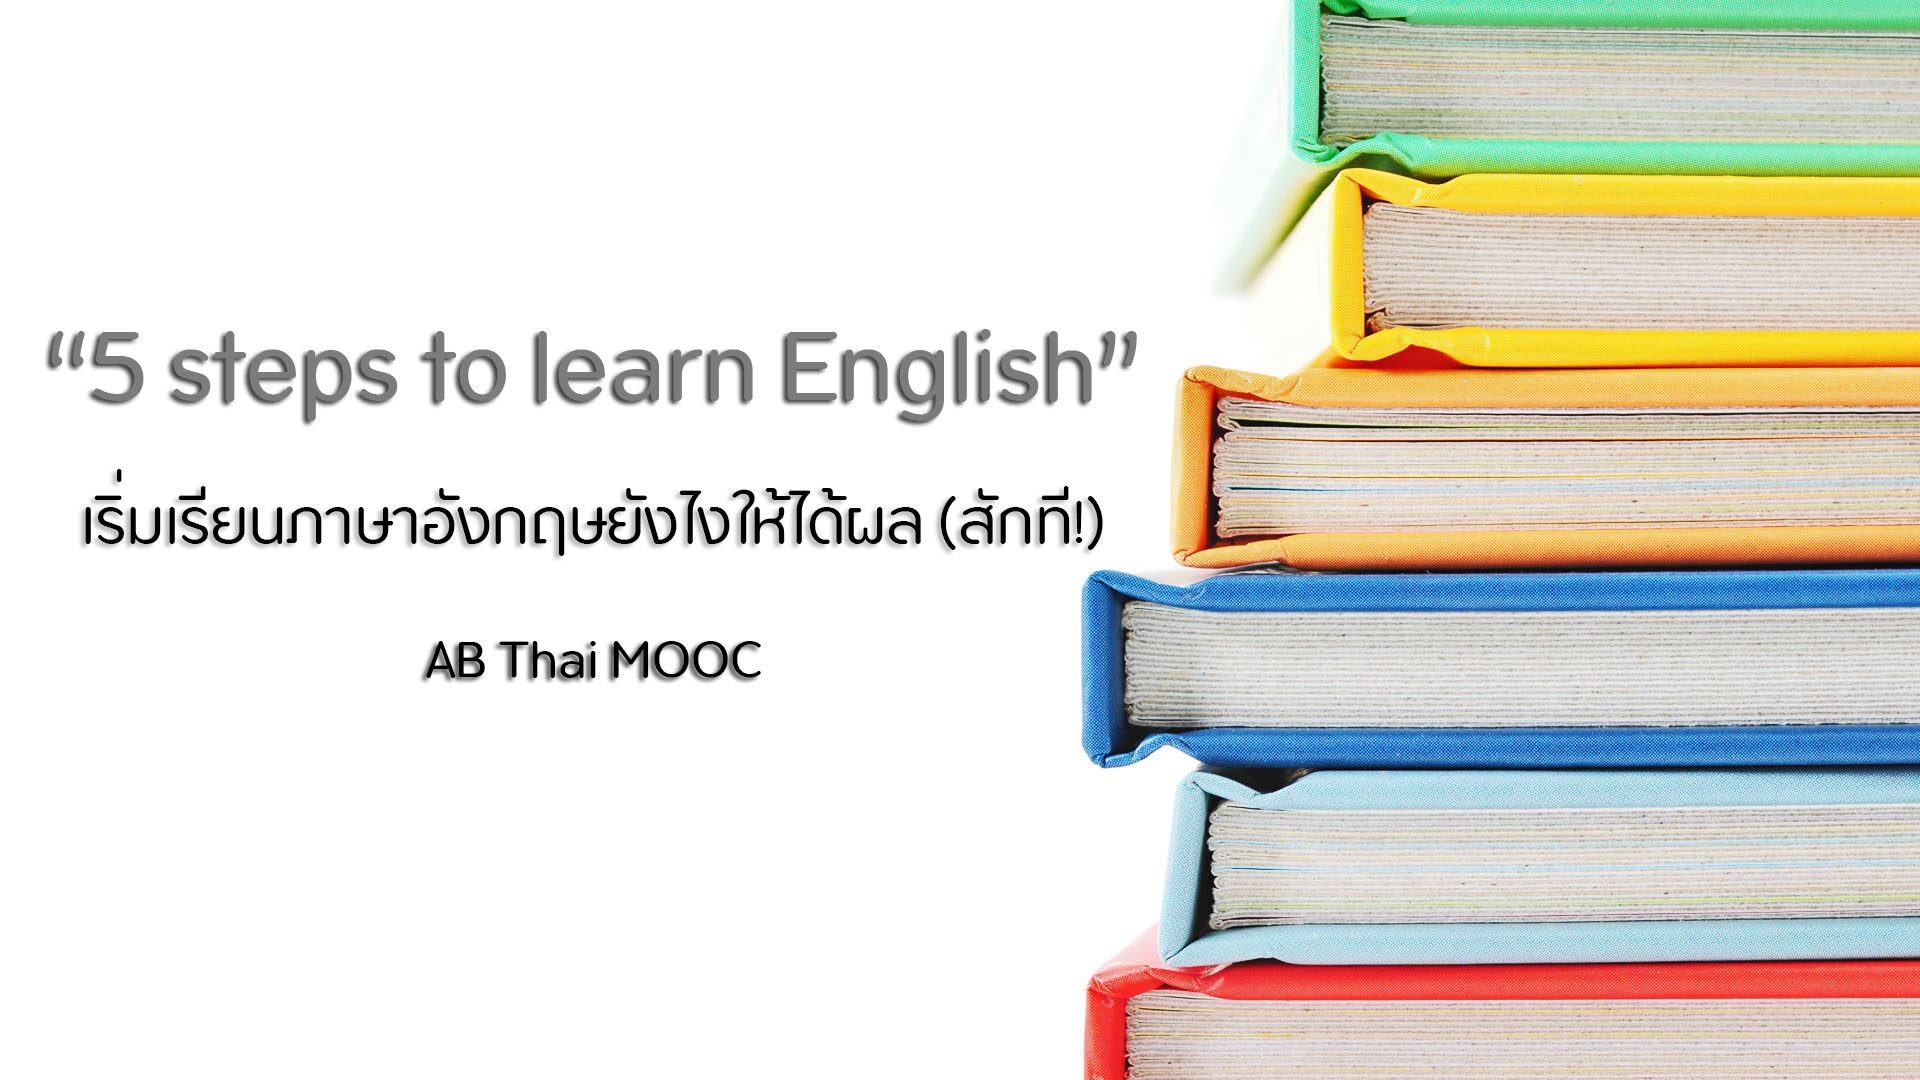 AB Thai MOOC เพราะการเรียนรู้ เกิดขึ้นได้ตลอดชีวิต